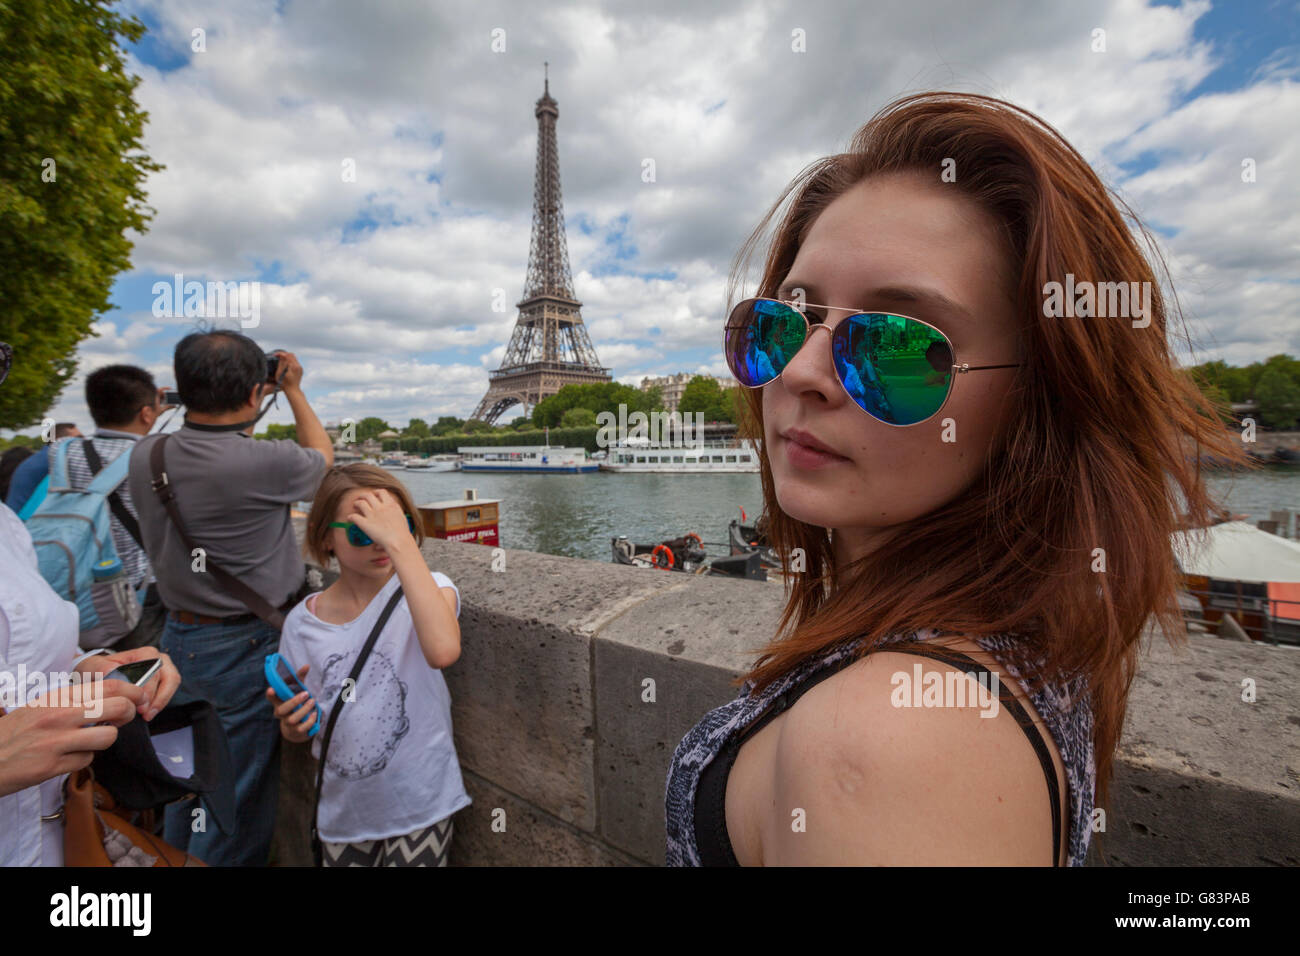 Belle jeune fille à la Seine boulevards avec Tour Eiffel ( Tour Eiffel ) en arrière-plan, Paris, France Banque D'Images